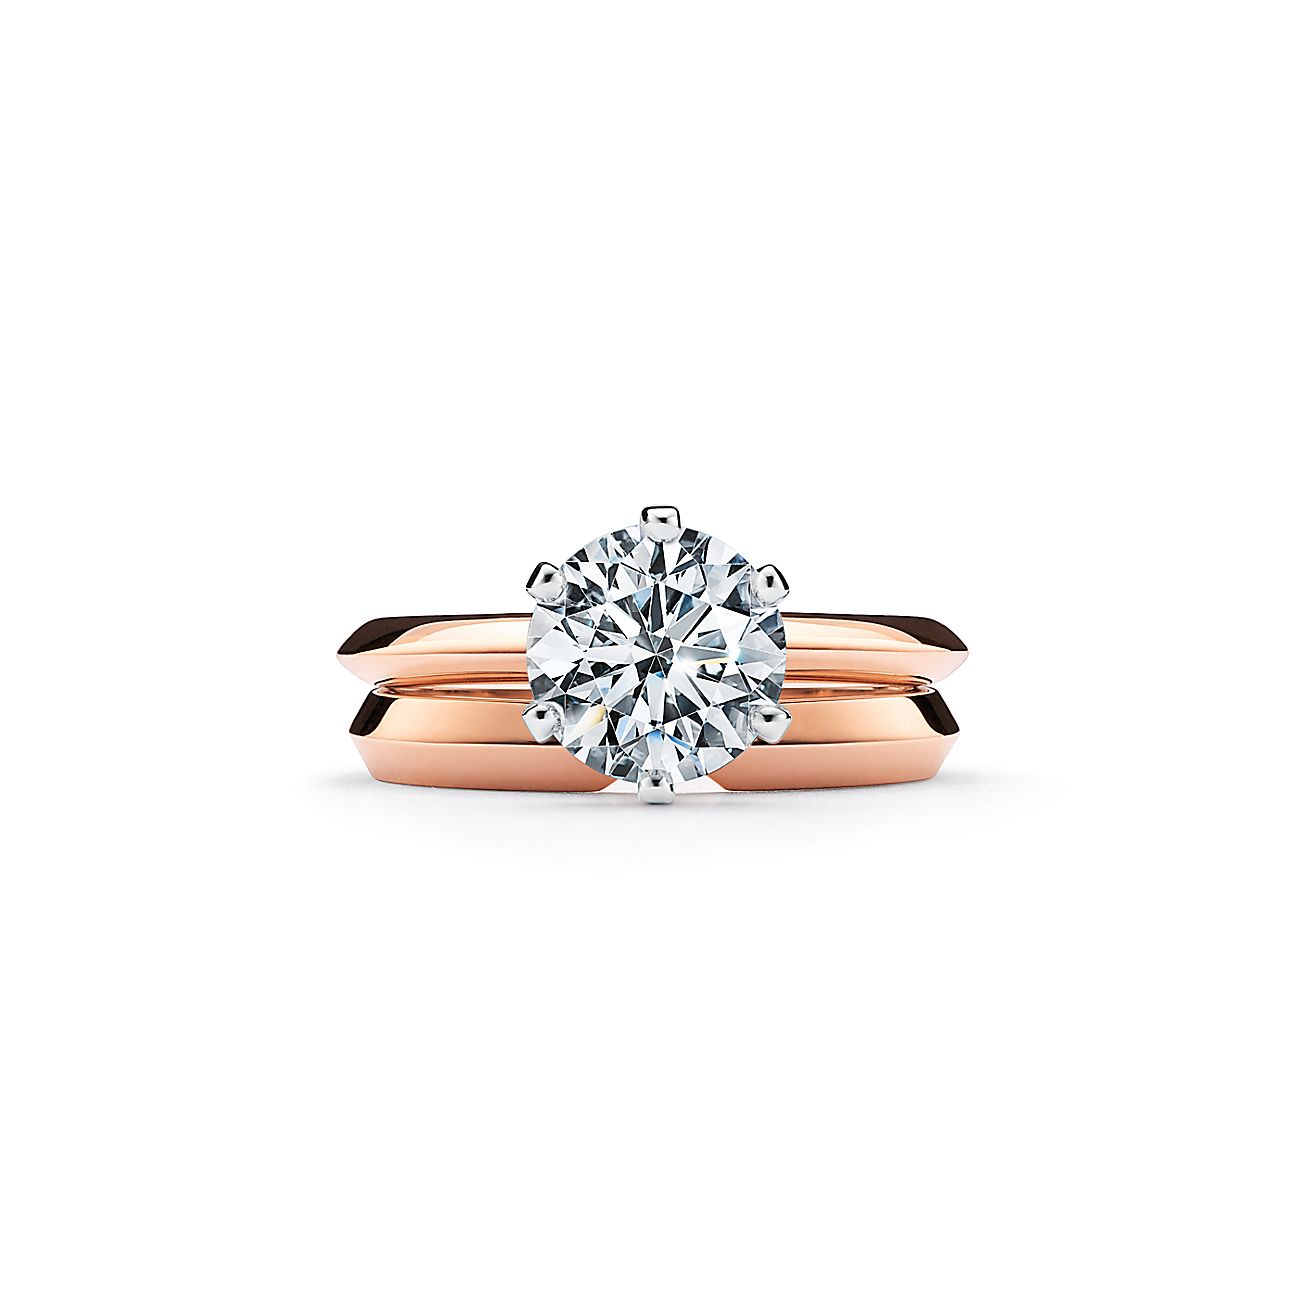 Tiffany® Setting en oro de 18k: el anillo de compromiso más icónico. Tiffany & Co.